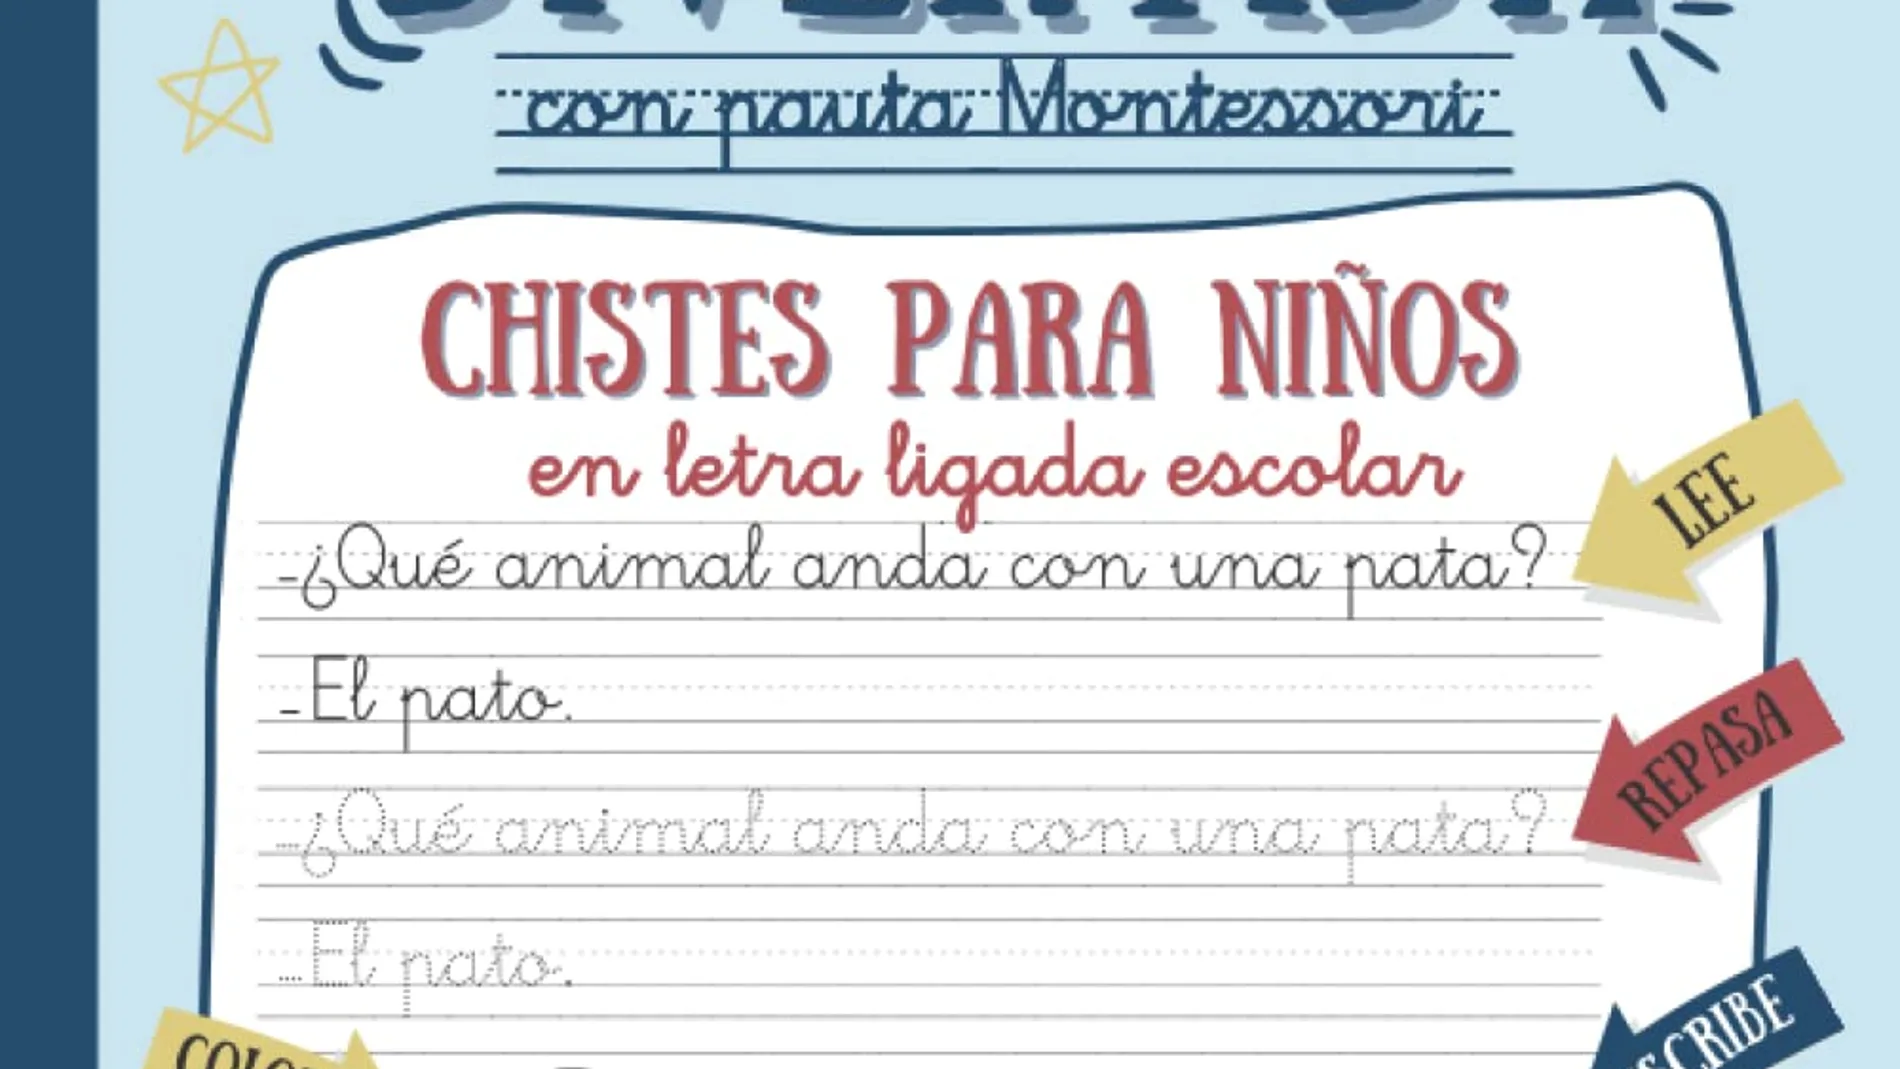 El mejor libro de caligrafía para el verano es este cuaderno de Montessori,  según los clientes de Amazon